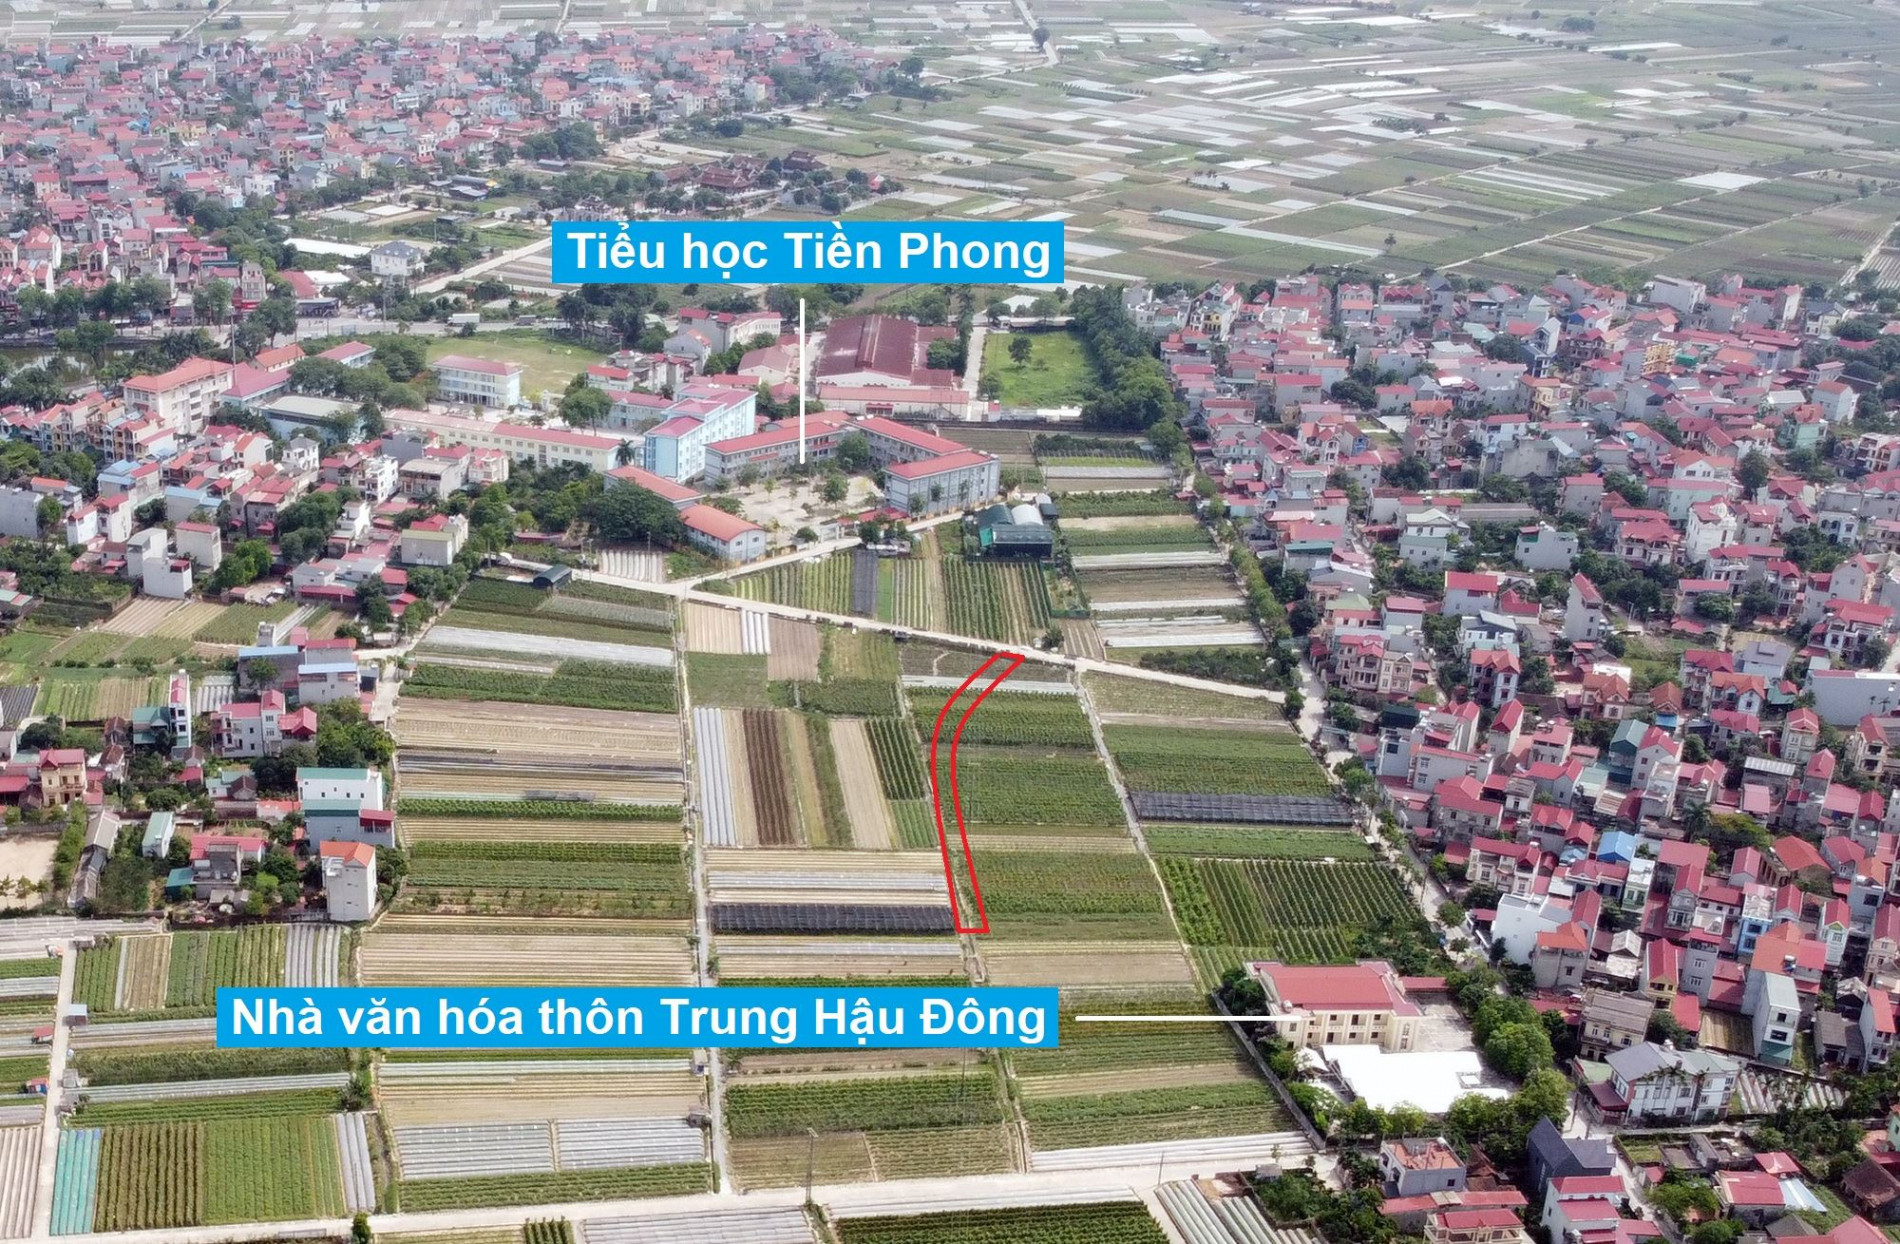 Đường sẽ mở theo quy hoạch ở xã Tiền Phong, Mê Linh, Hà Nội (phần 1)